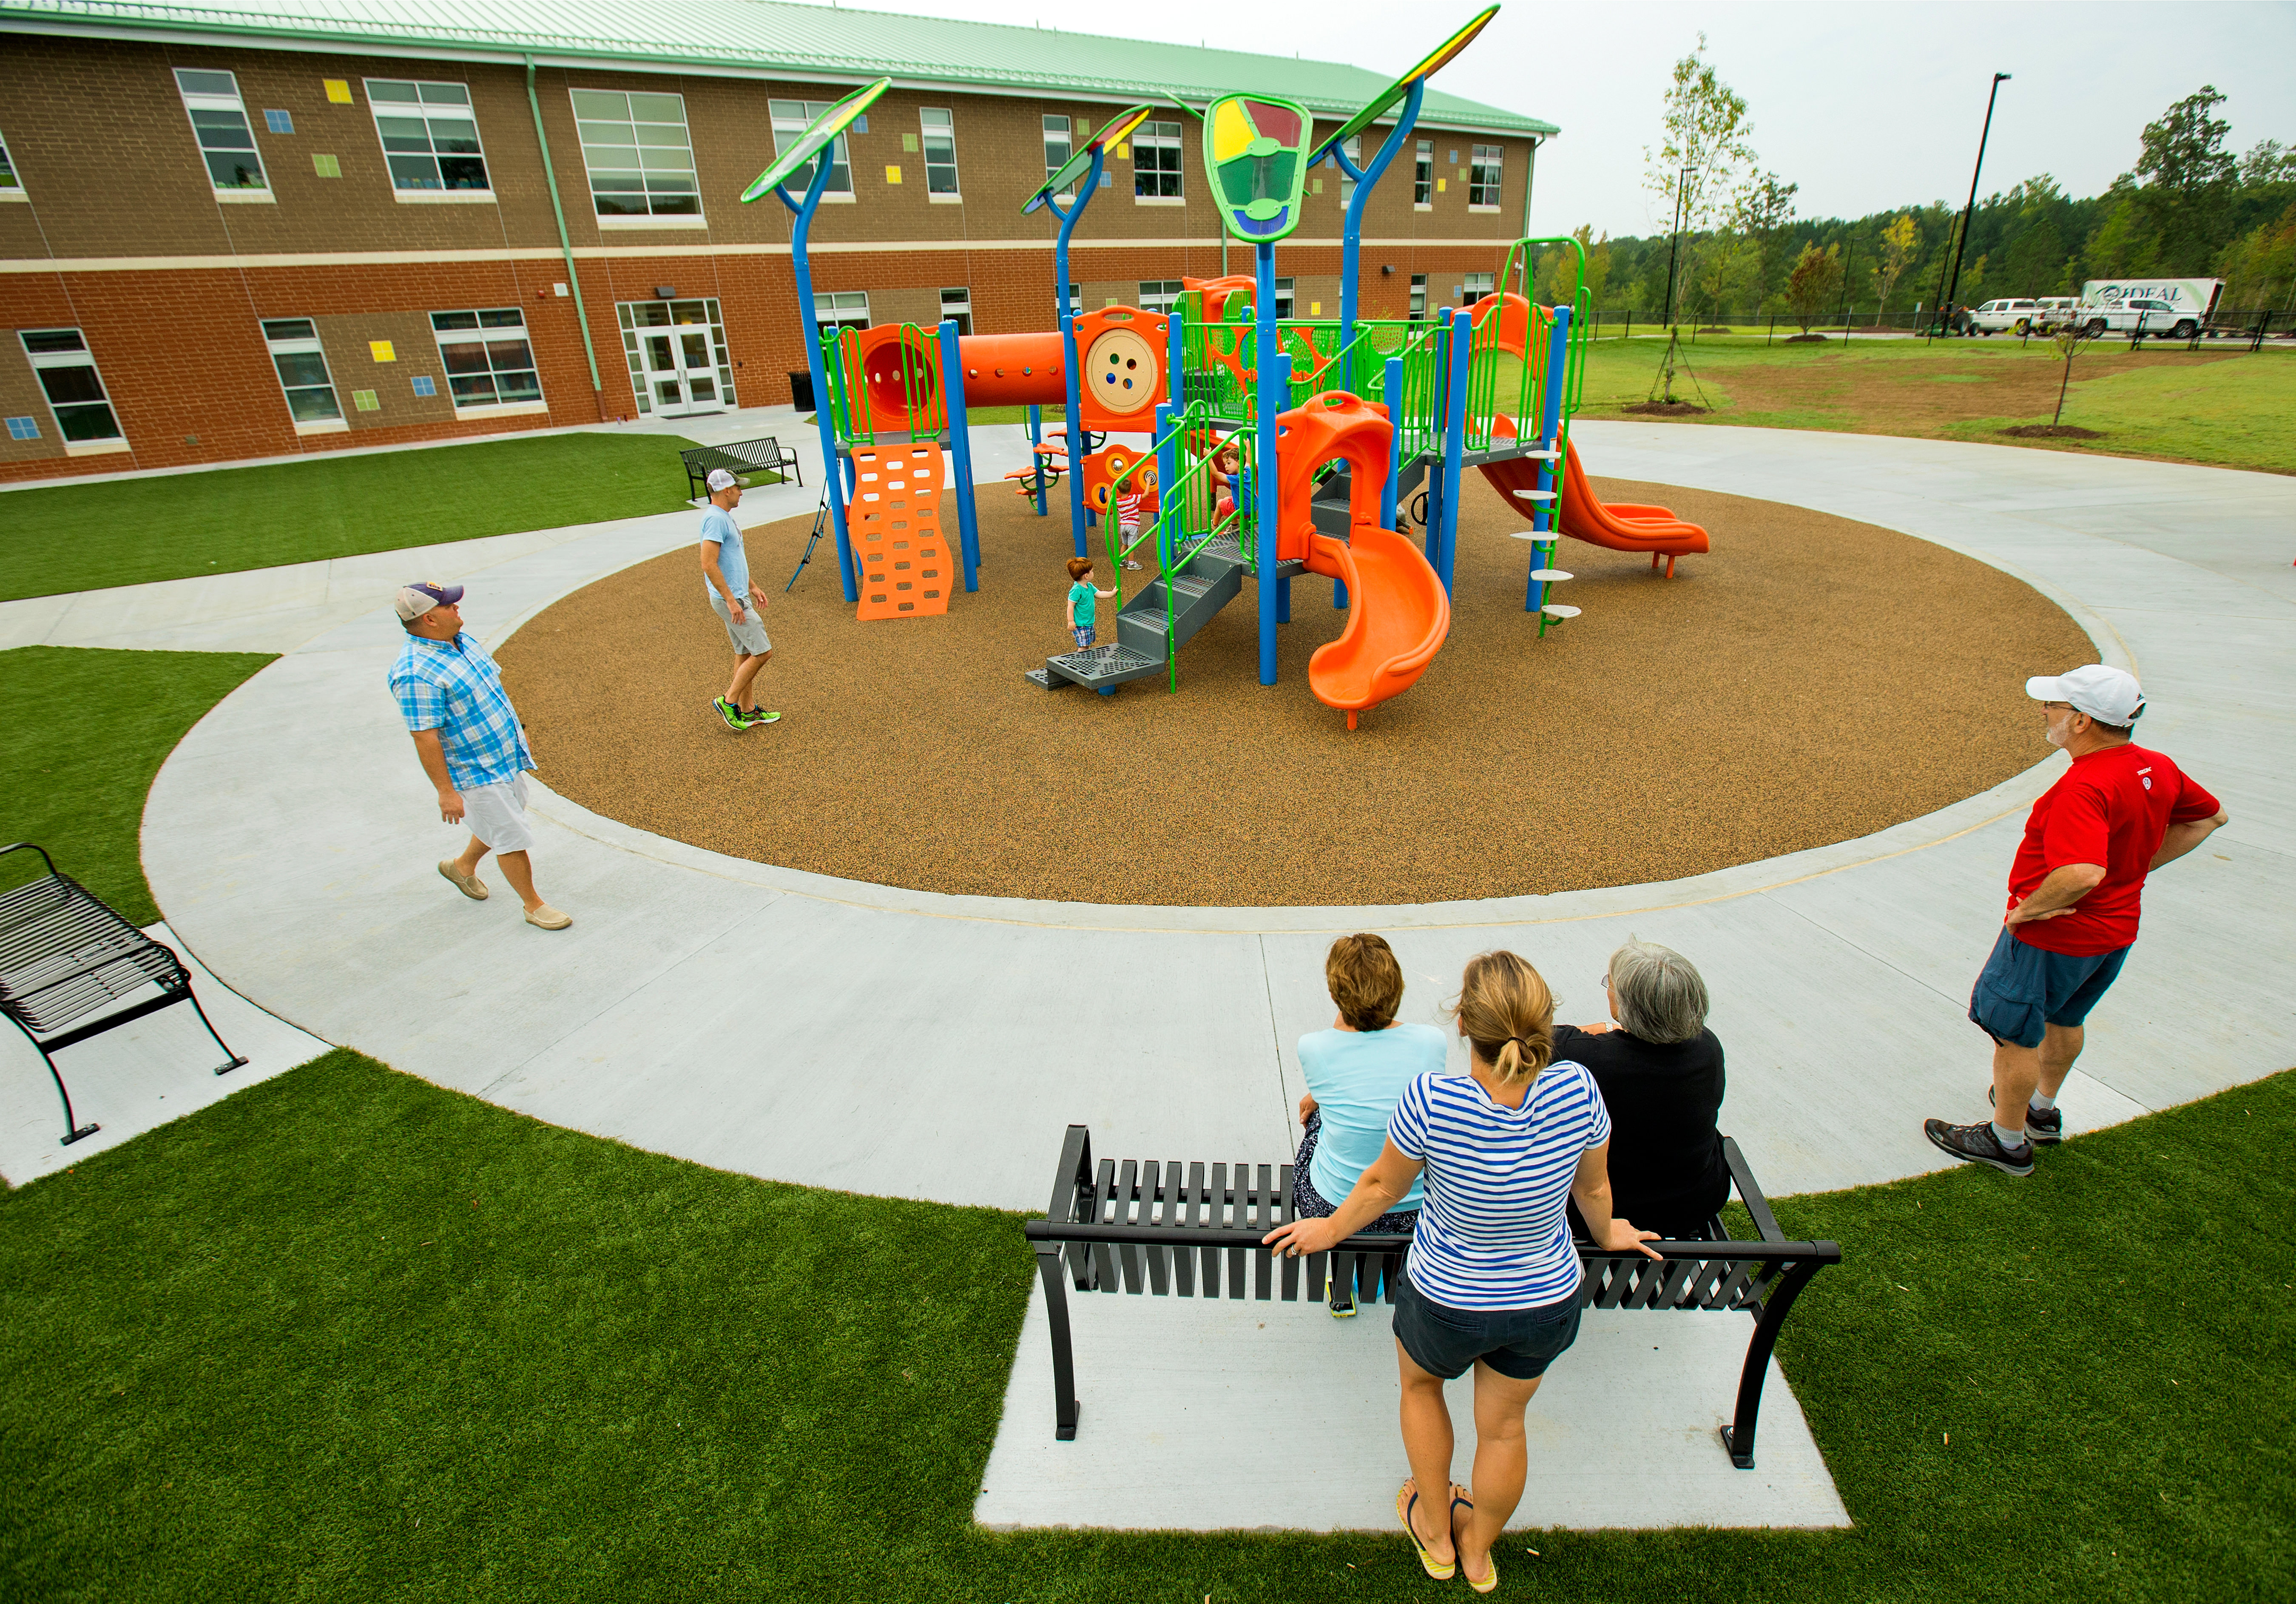 Playground вышло обновление. Детская площадка в школе. Дети на площадке. Детские площадки в школе. Площадка для игр детей школьного возраста.